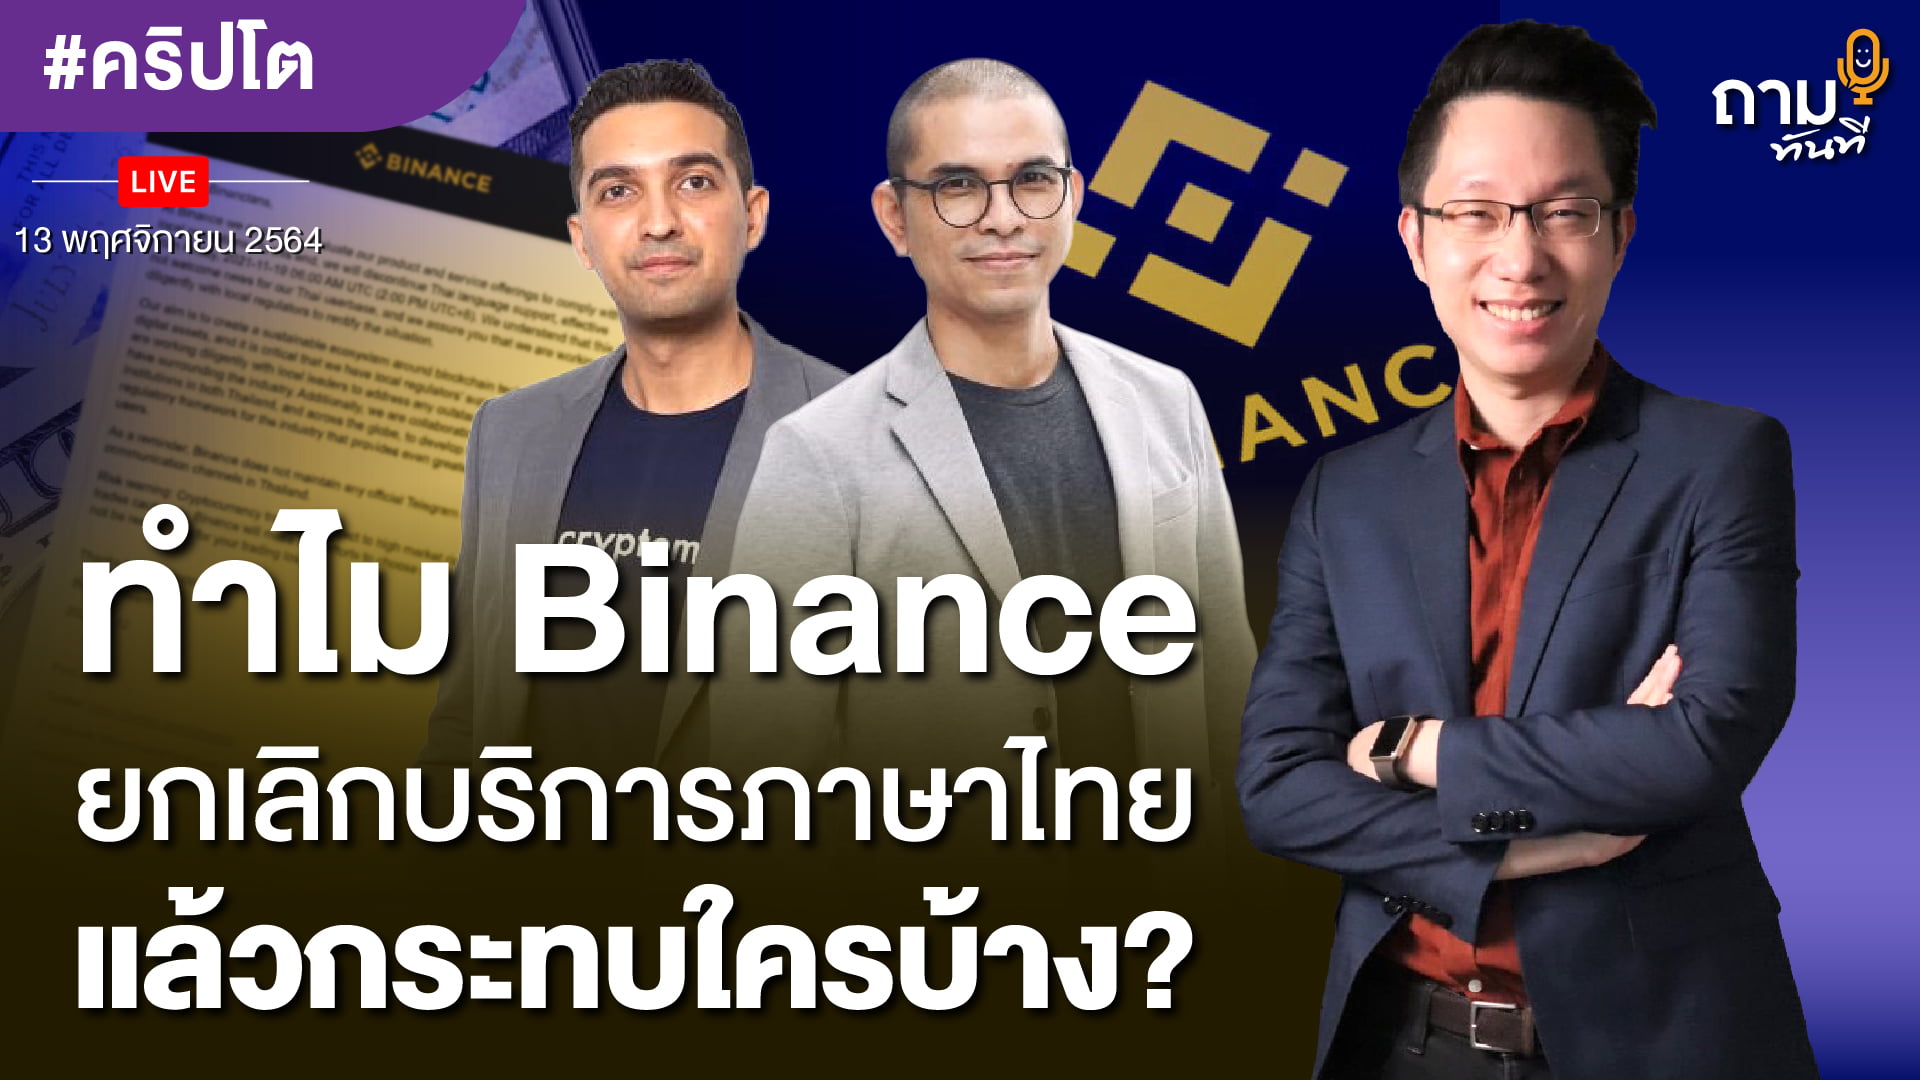 ทำไม Binance ยกเลิกให้บริการภาษาไทย? แล้วกระทบใครบ้าง?